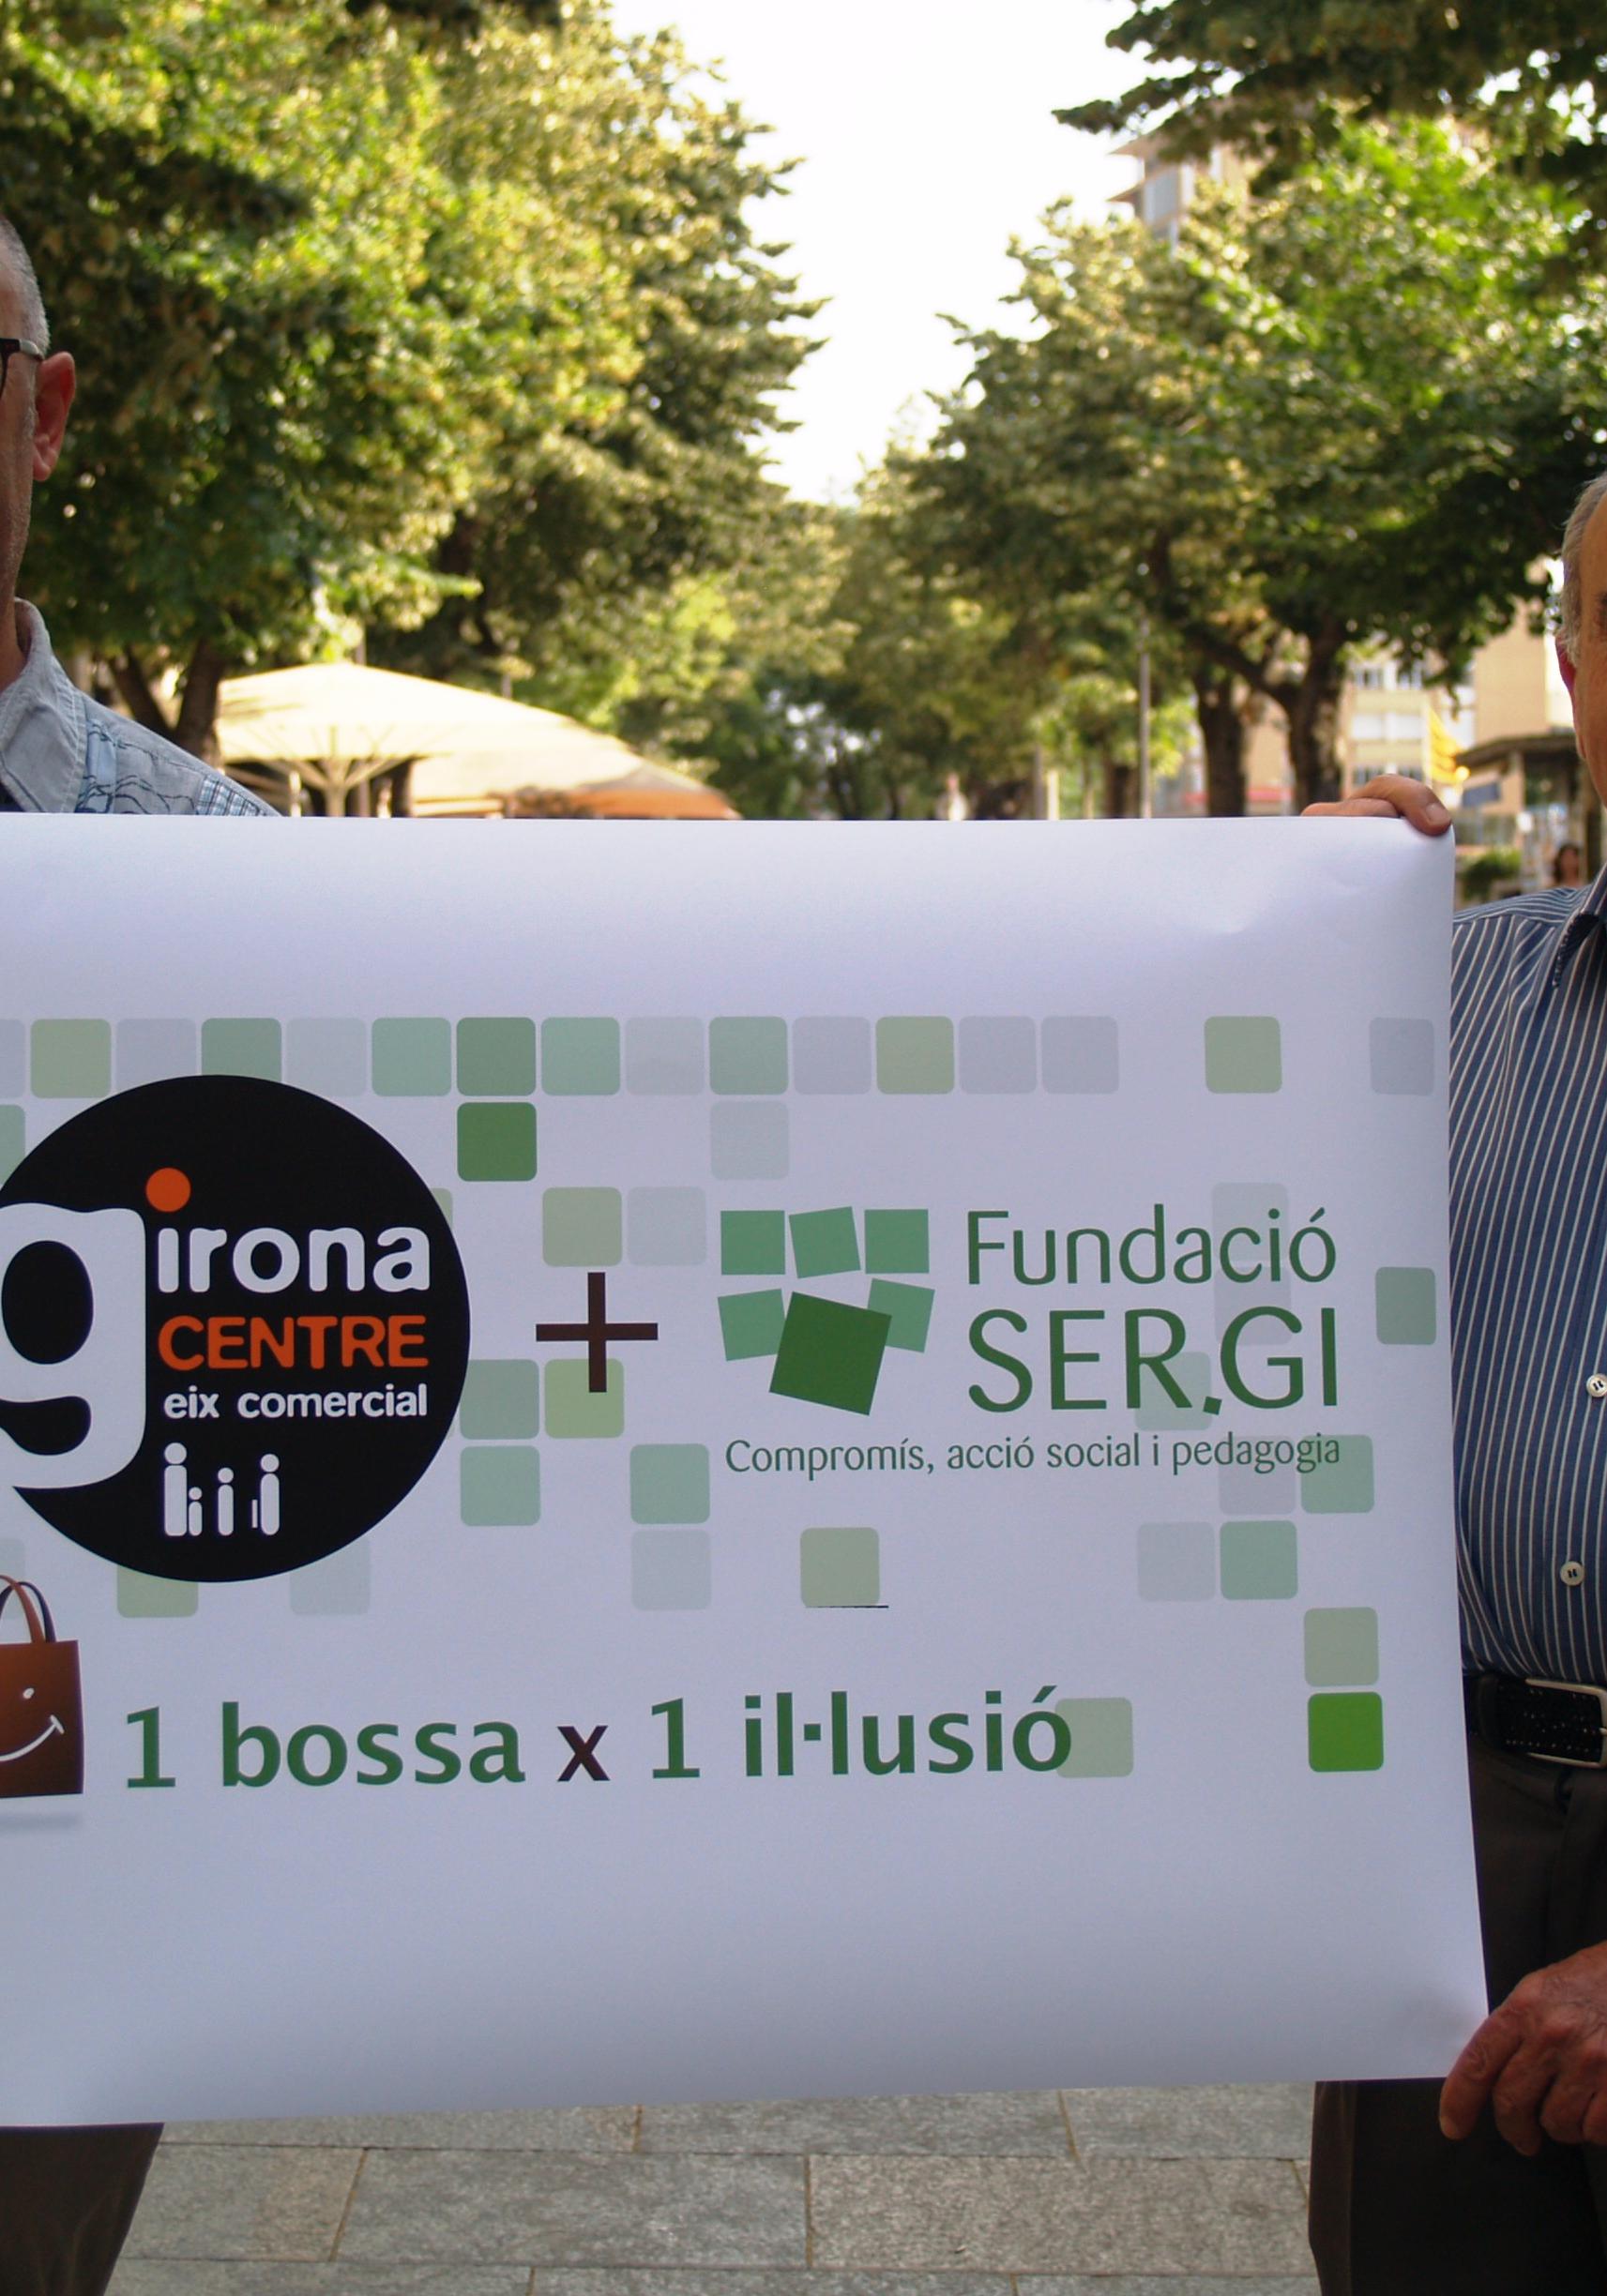 Girona Centre i la Fundació SER.GI promouen la campanya “1 bossa x 1 il•lusió”